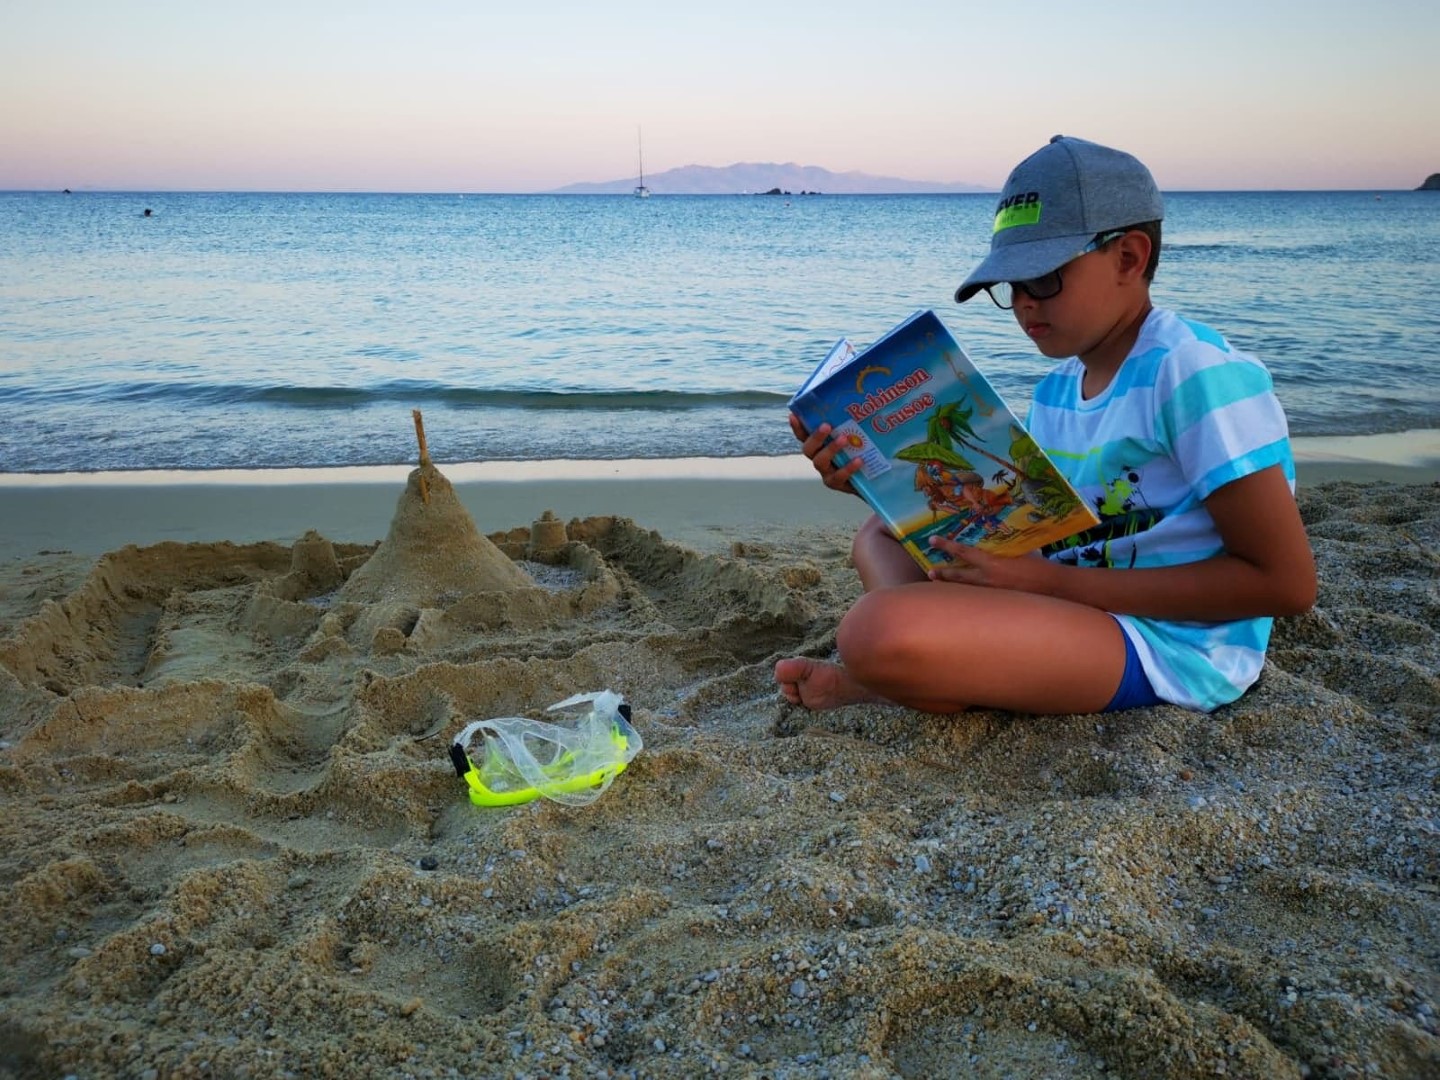 Zwycięzca konkursu. Chłopiec siedzi na plaży nad morzem, w czapce z daszkiem i błękitnej koszulce. Trzyma książkę. Przed nim zamek zbudowany z piachu.